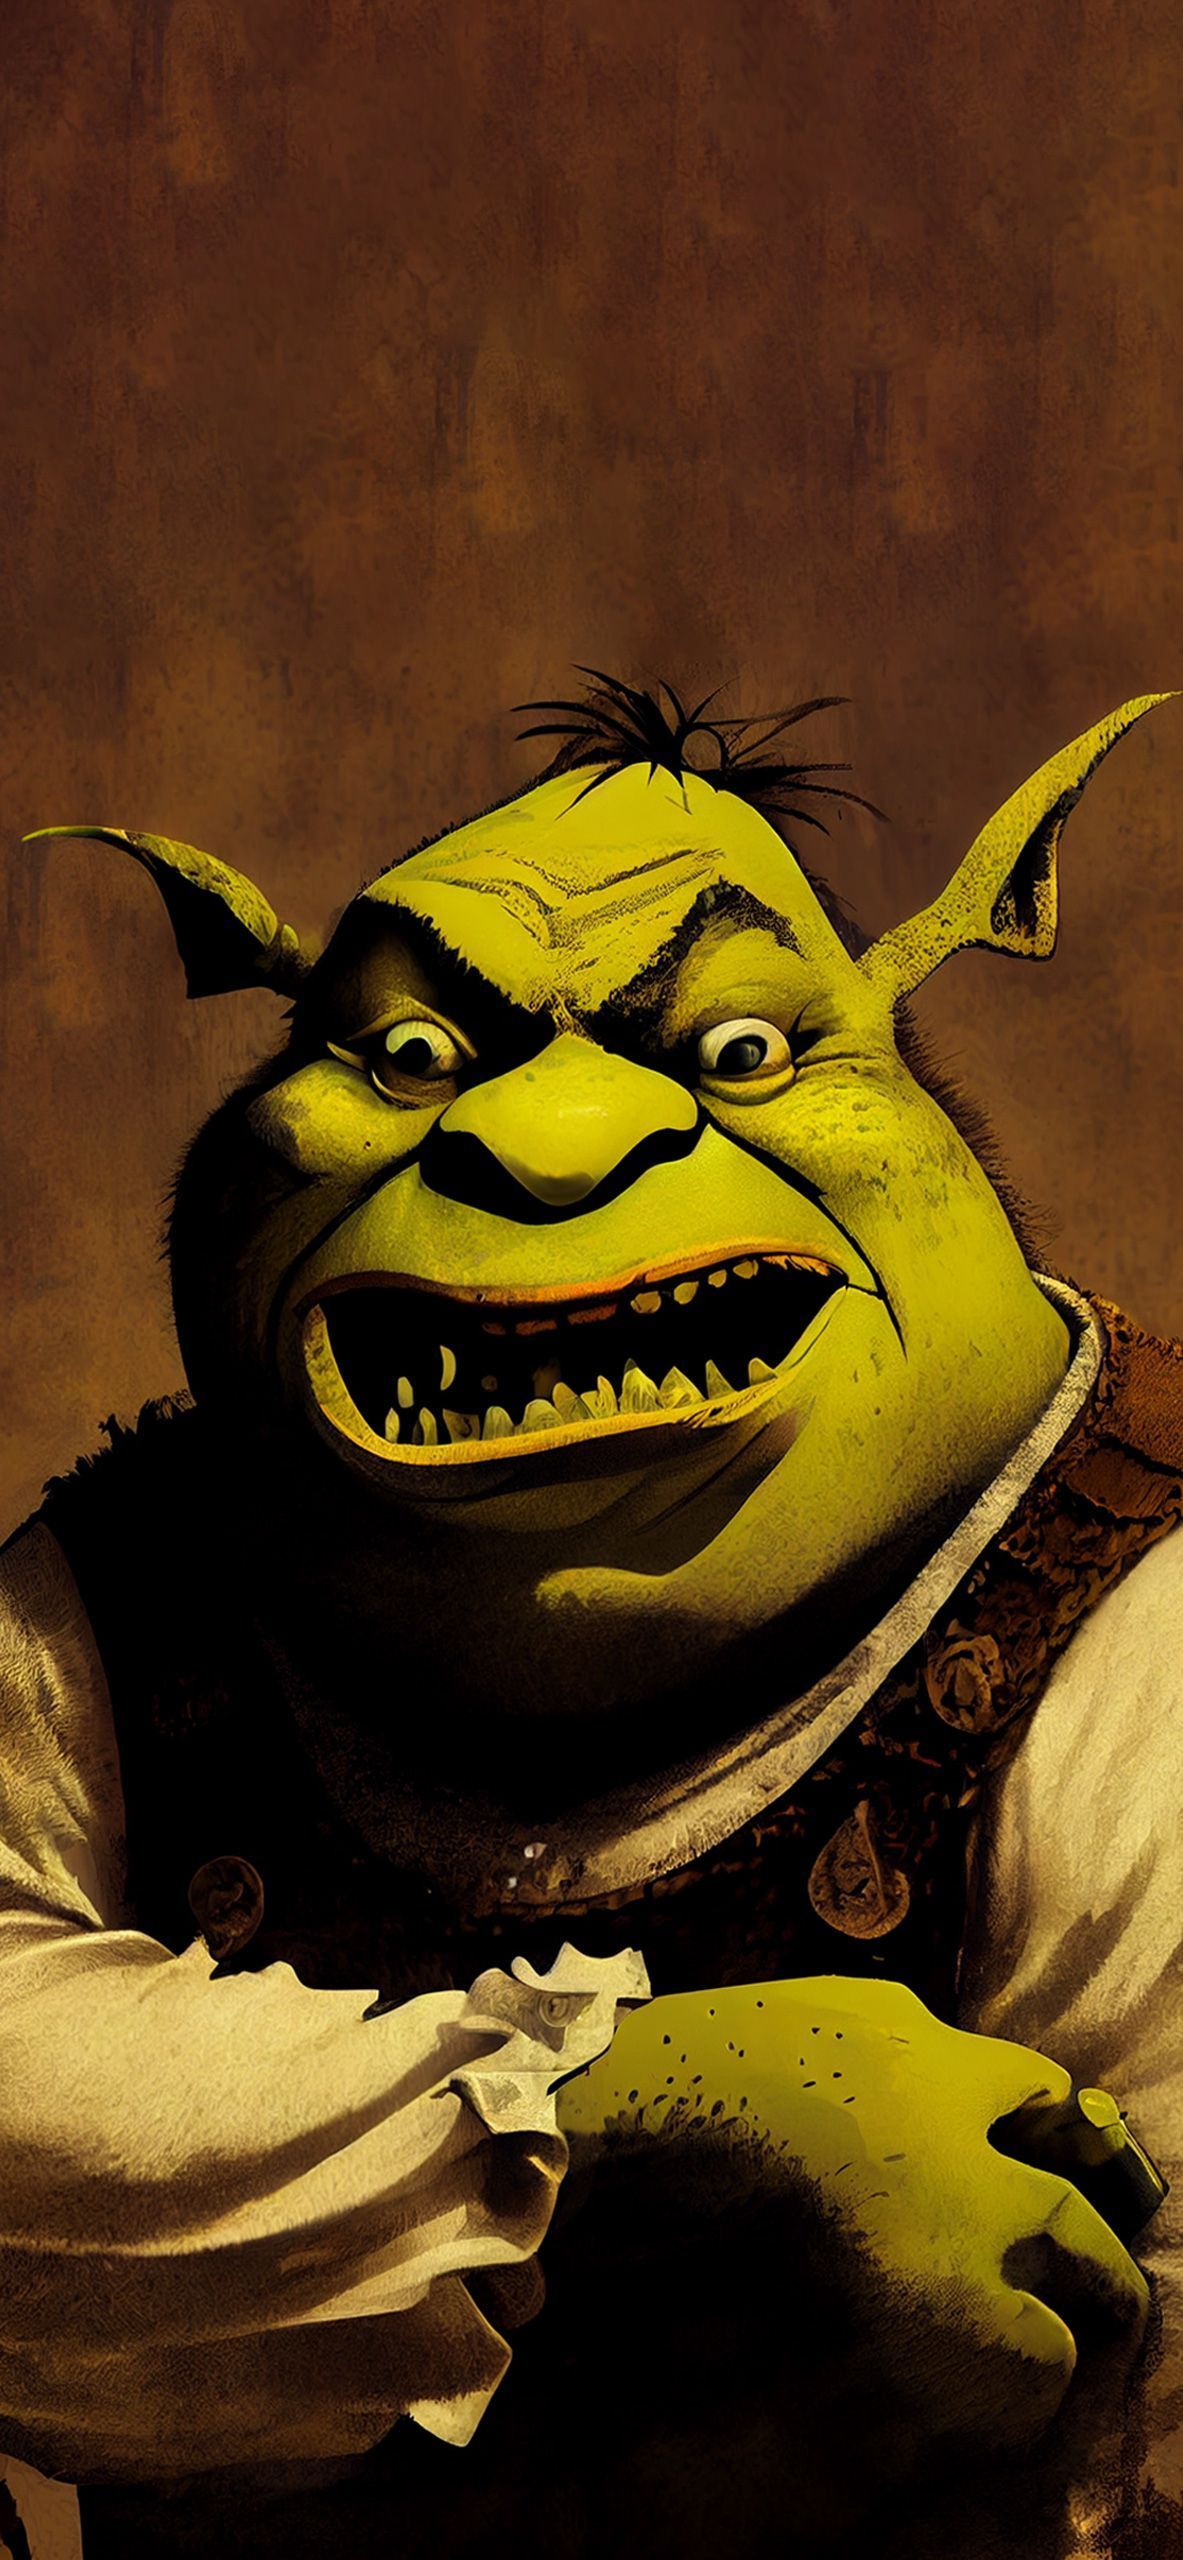 IPhone wallpaper with Shrek from the movie Shrek. - Shrek